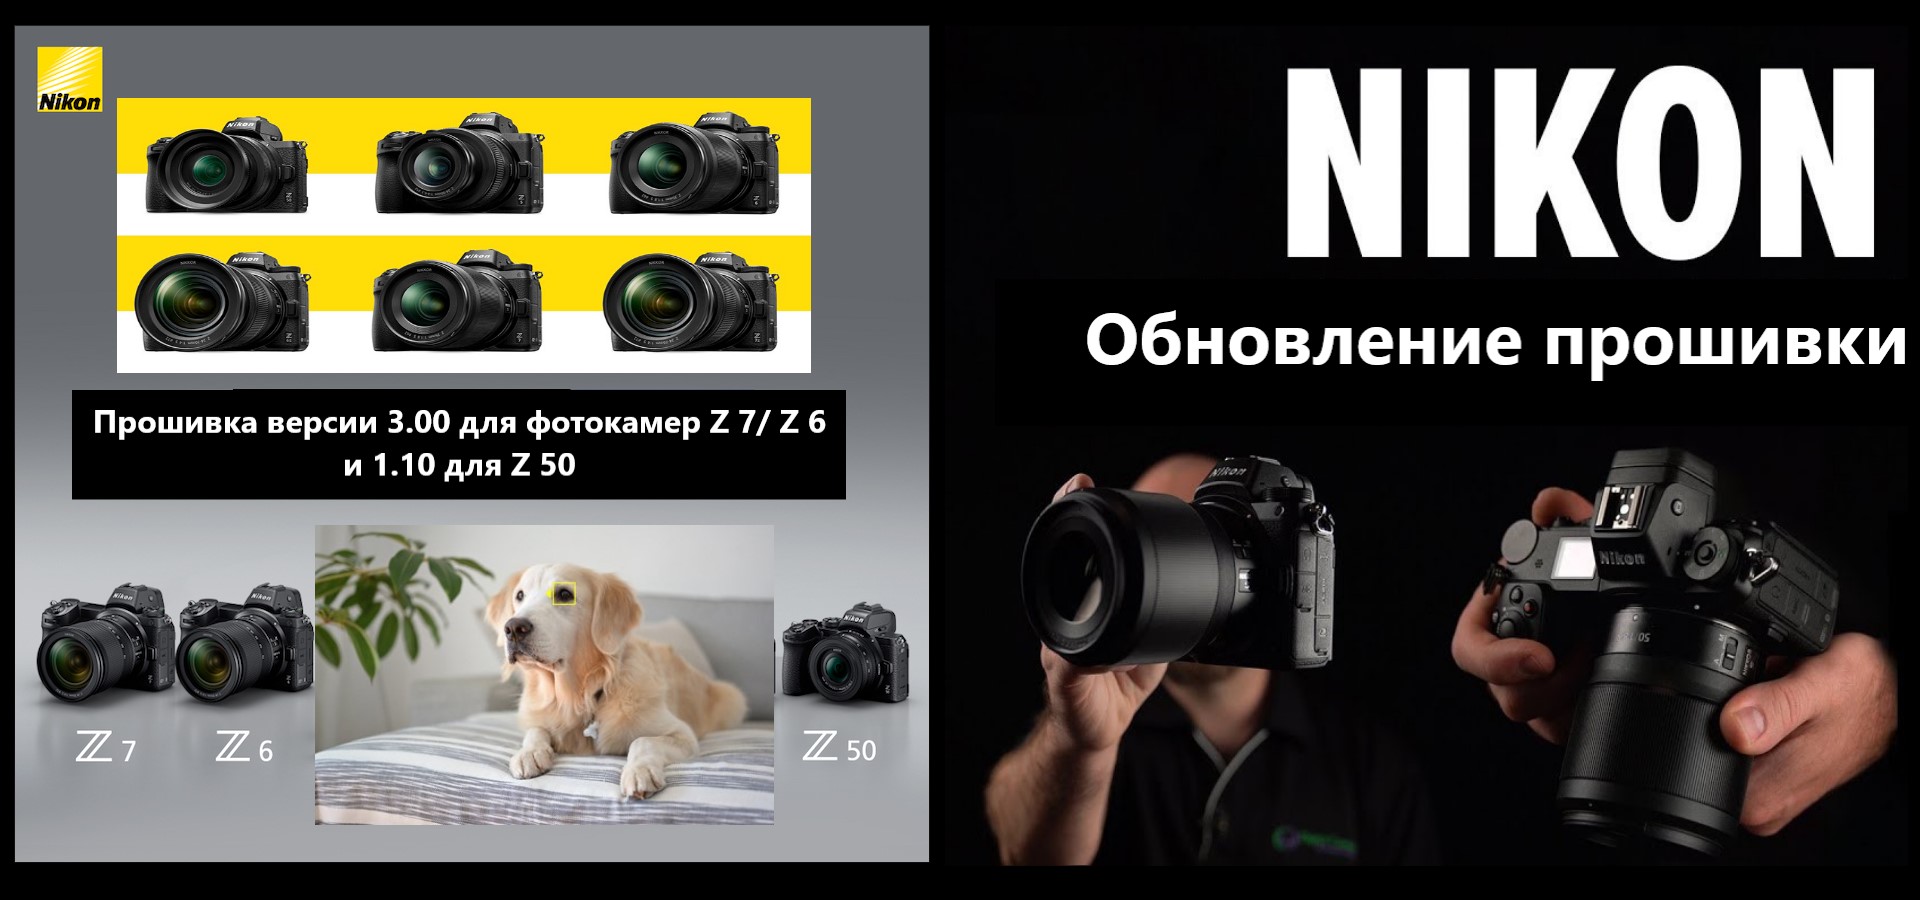 Обновление прошивки для Nikon Z серии